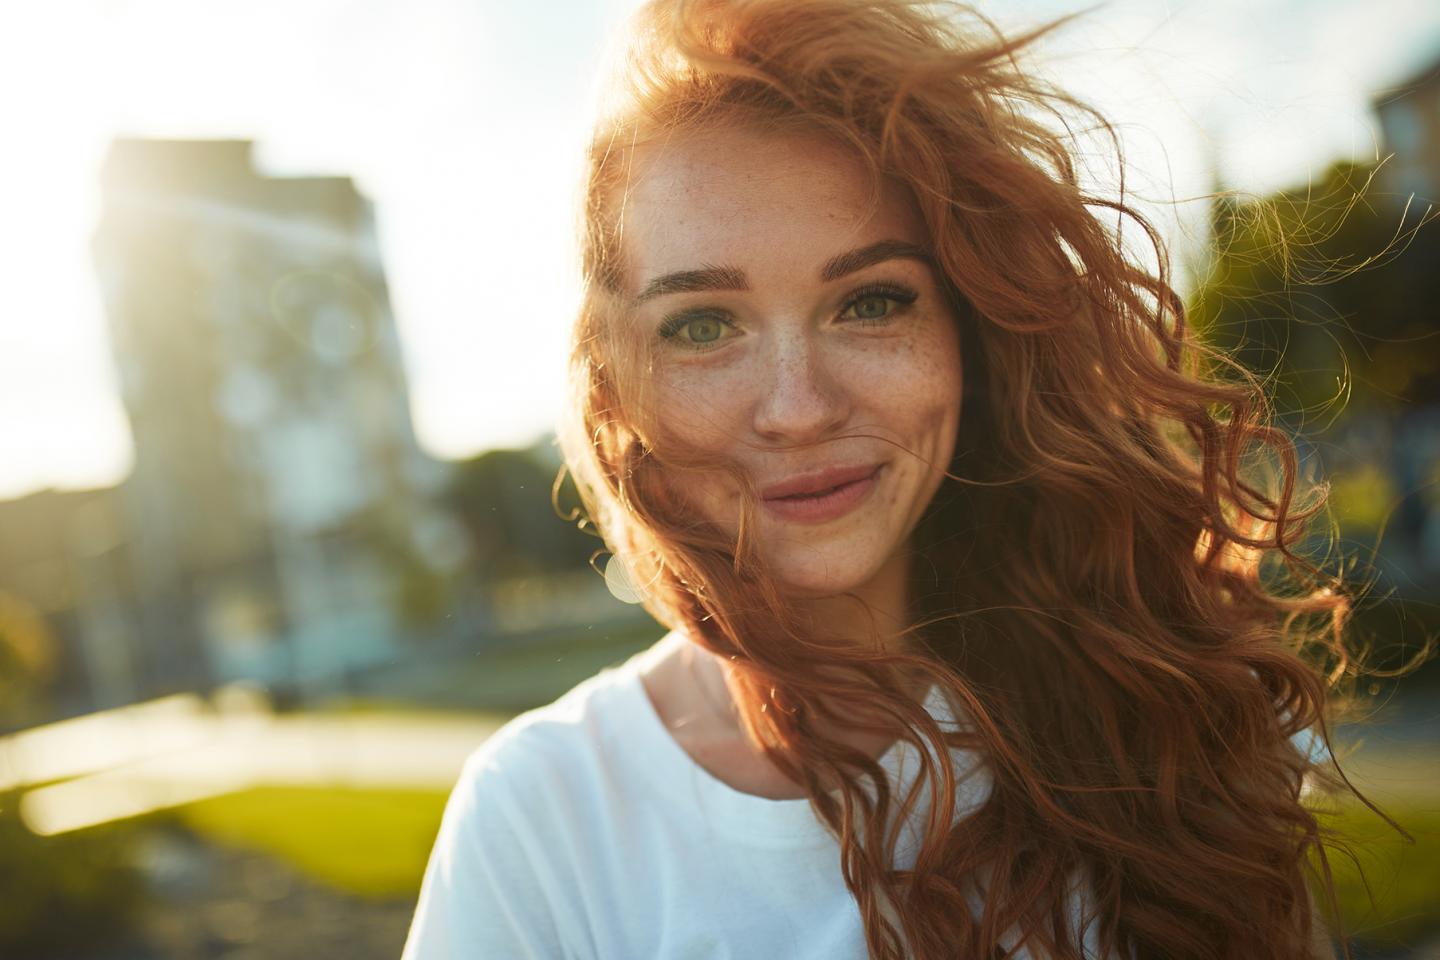 Portrait einer jungen Frau. Sie hat lockige rote Haare, blickt lächelnd in die Kamera.